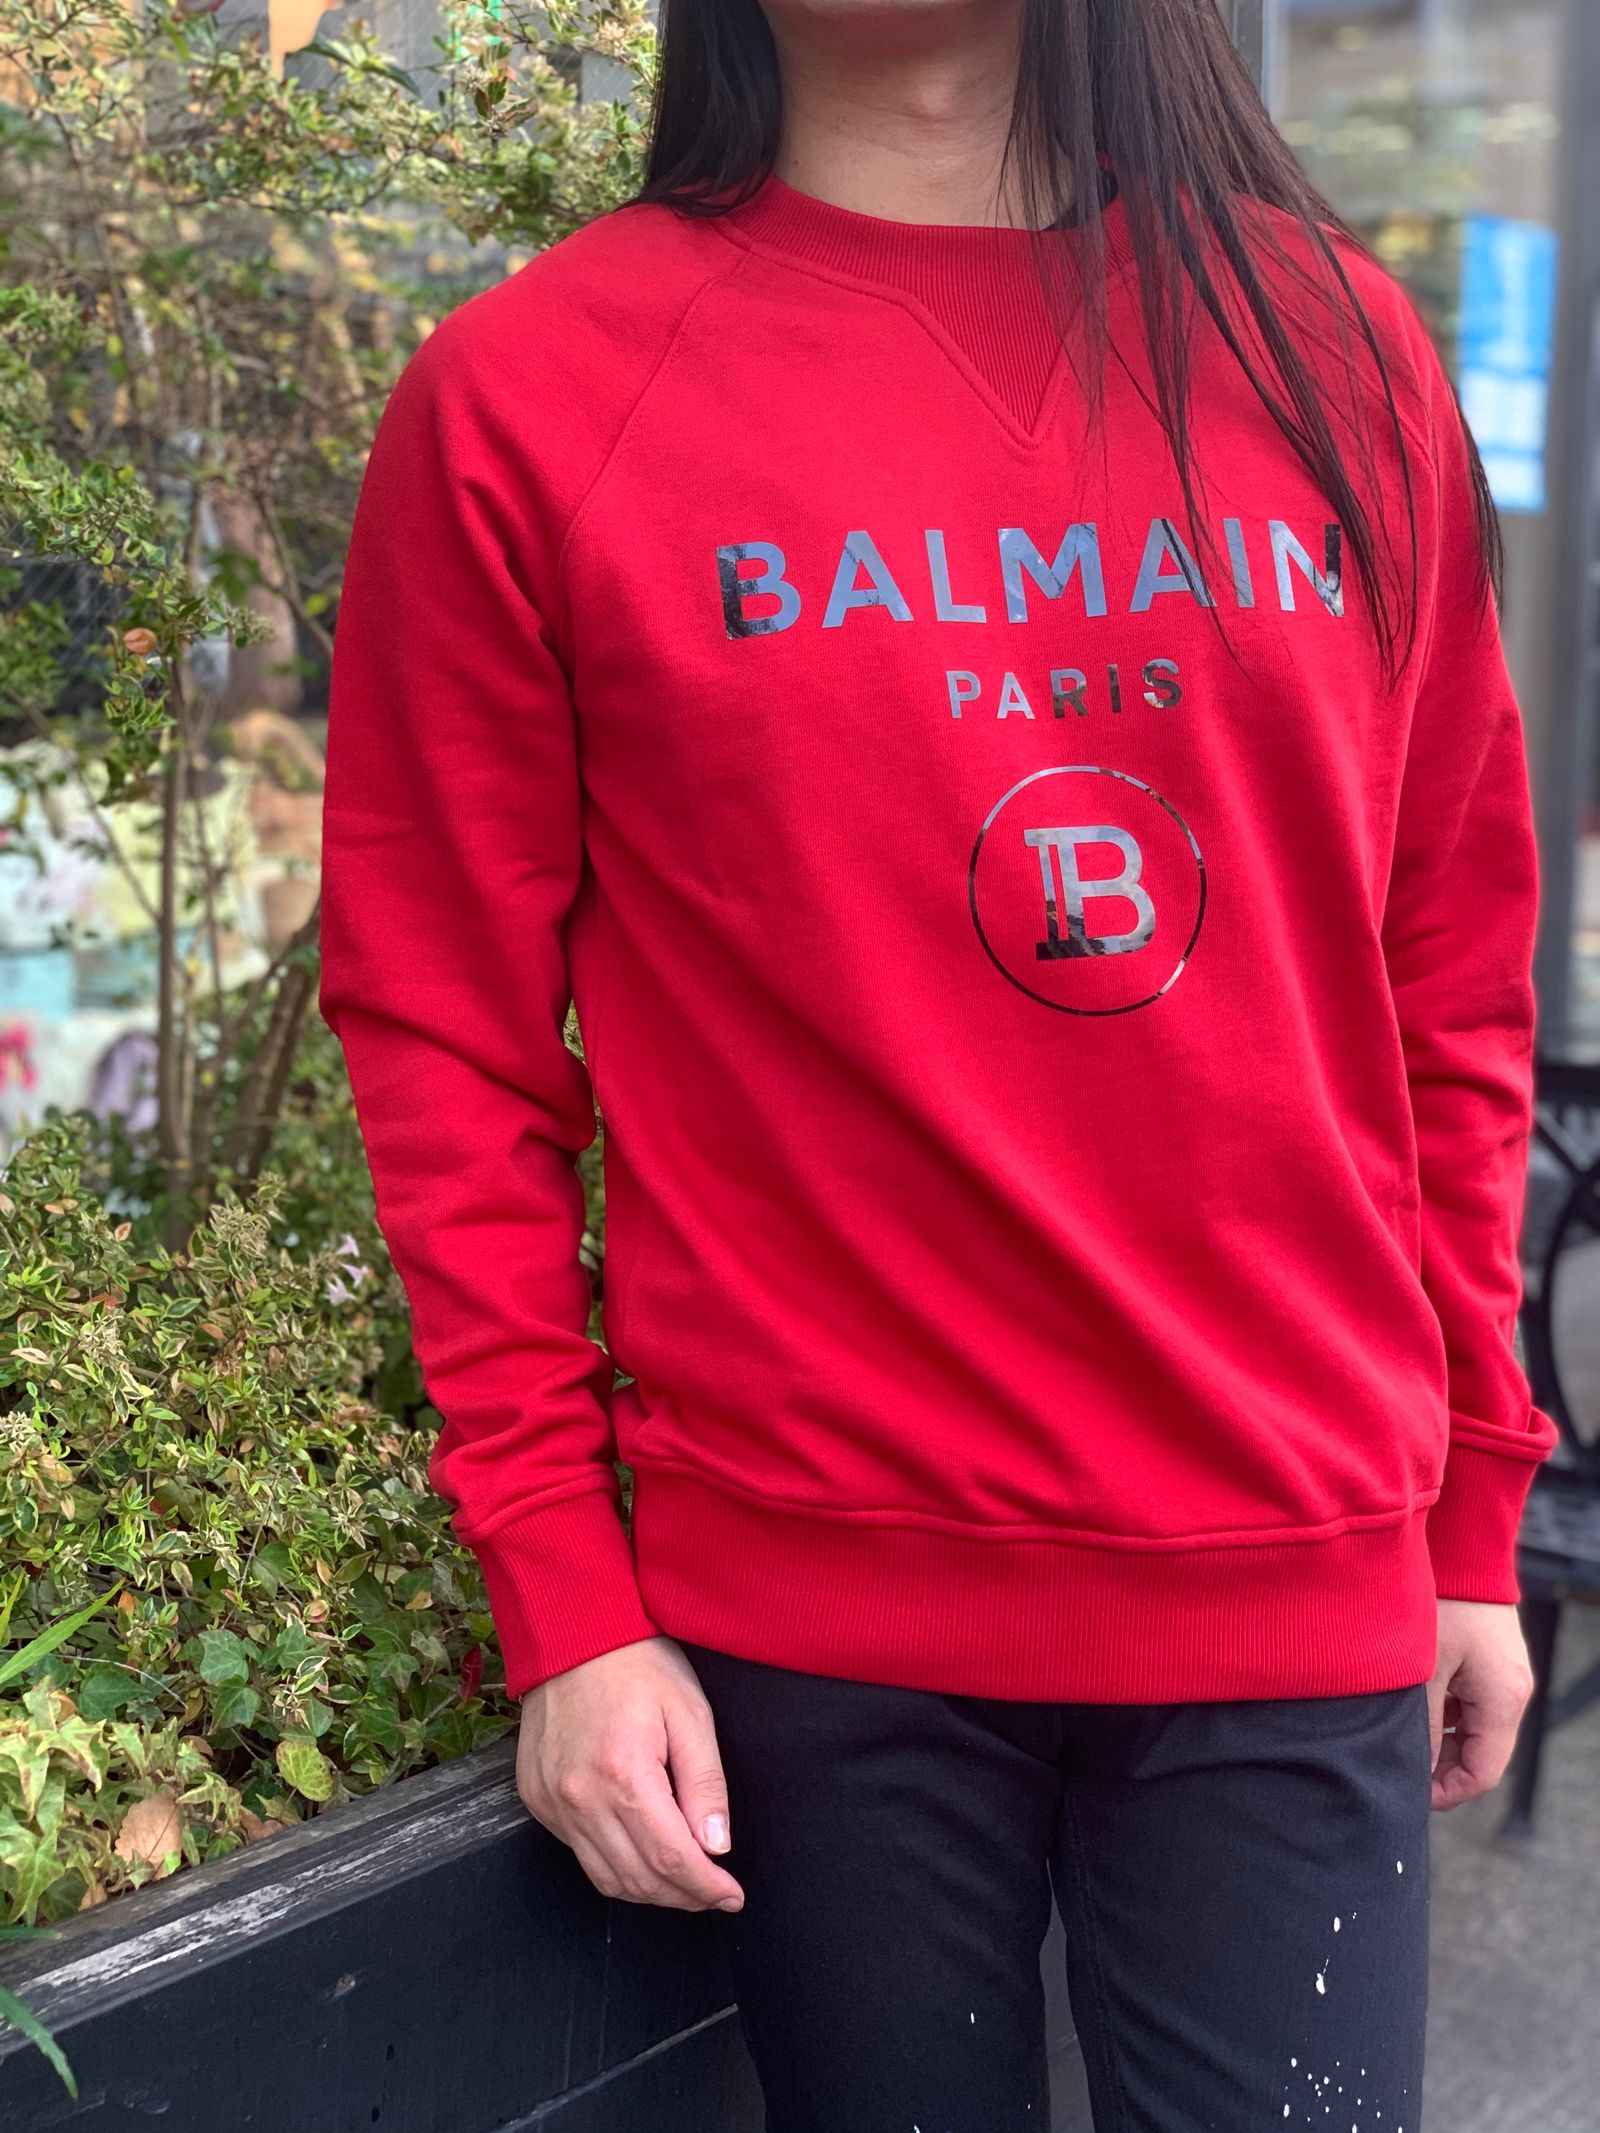 BALMAIN - バルマン | STORY 公式通販 - オンラインストア